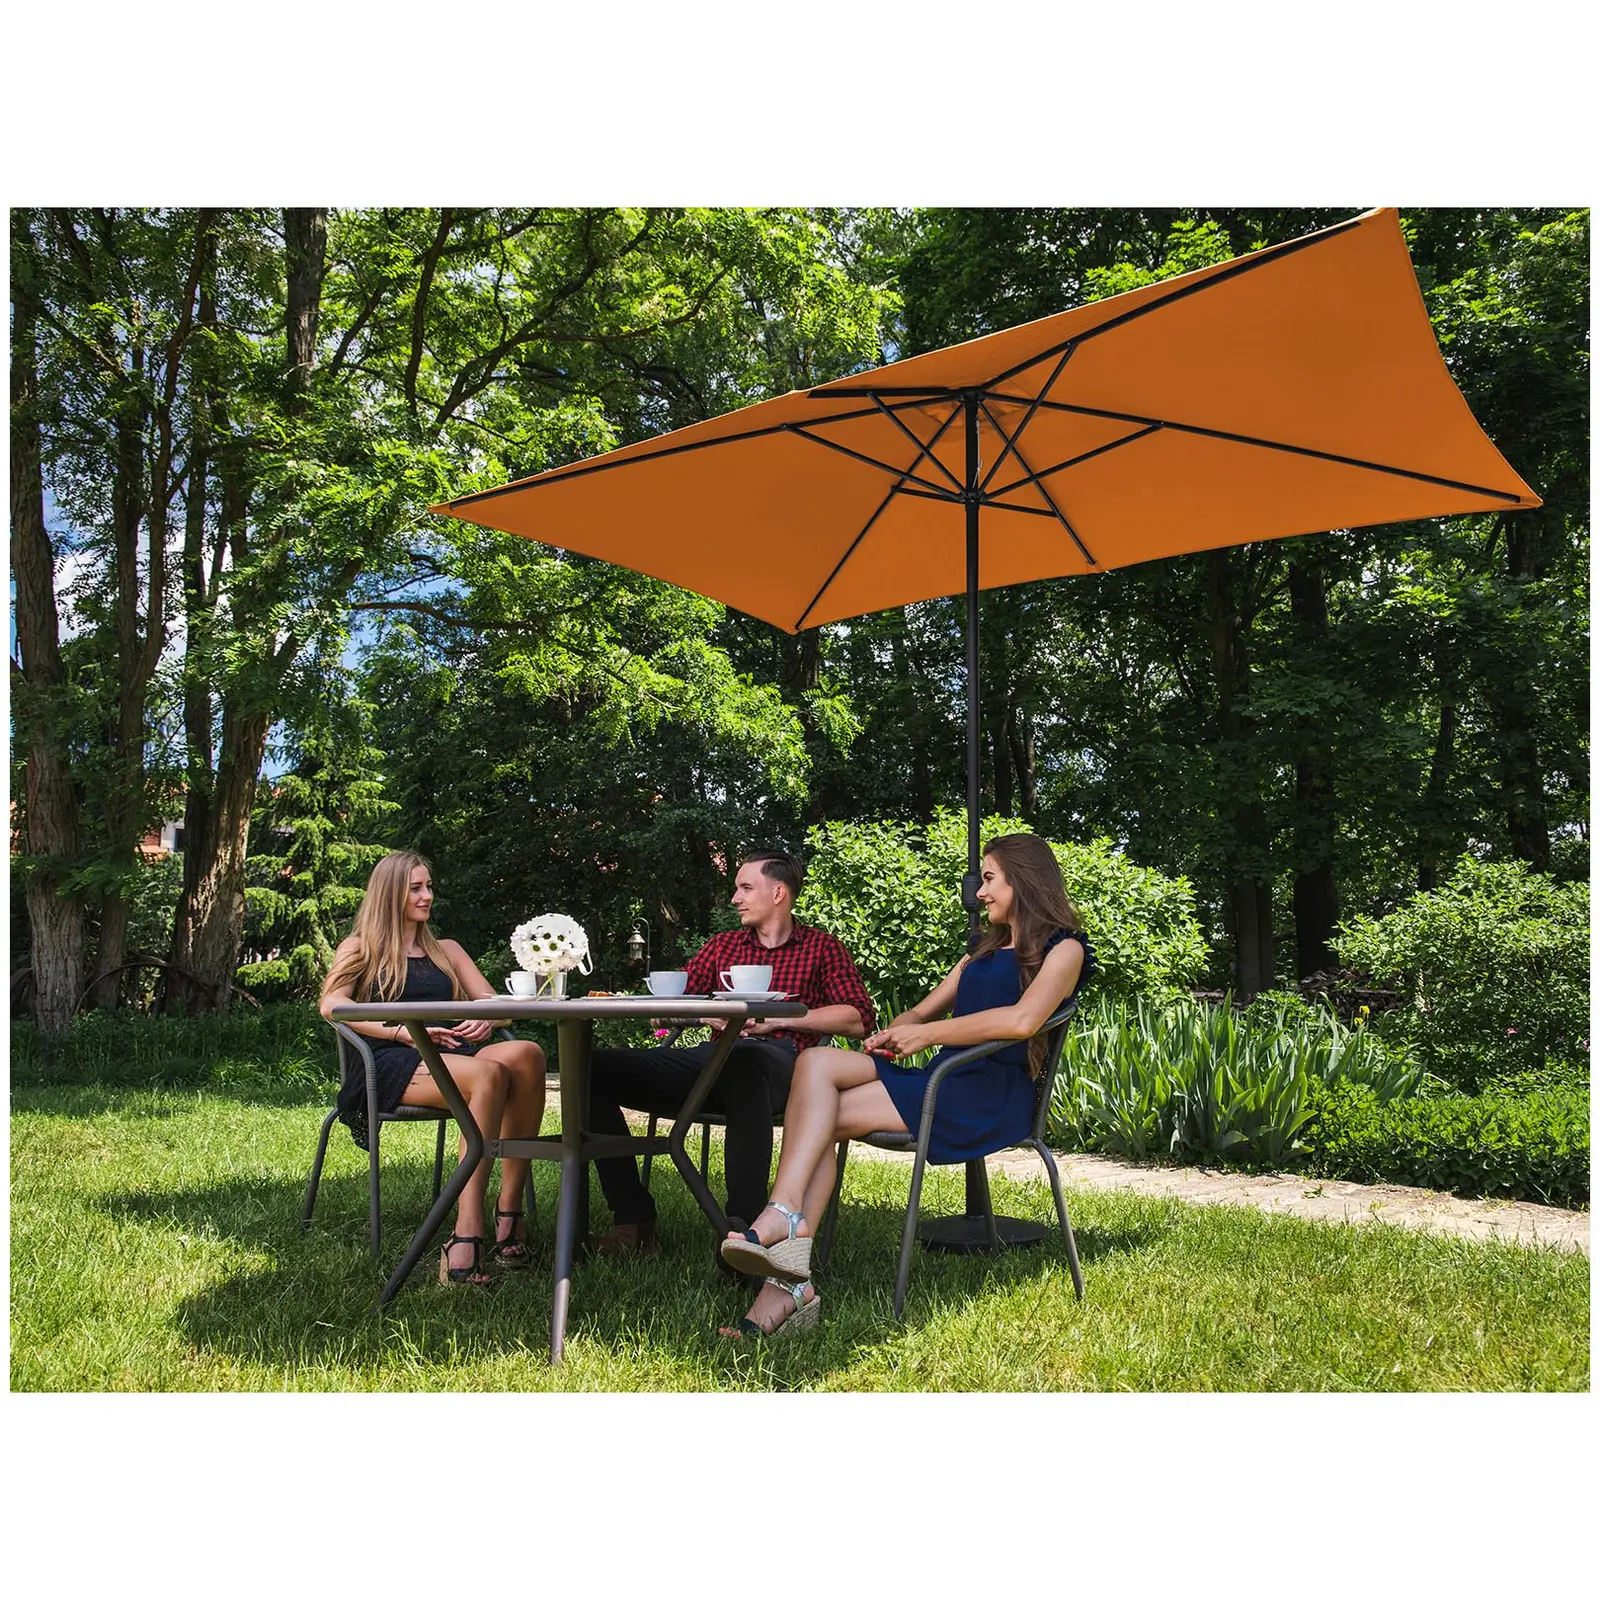 B-Ware Sonnenschirm groß - orange - rechteckig - 200 x 300 cm